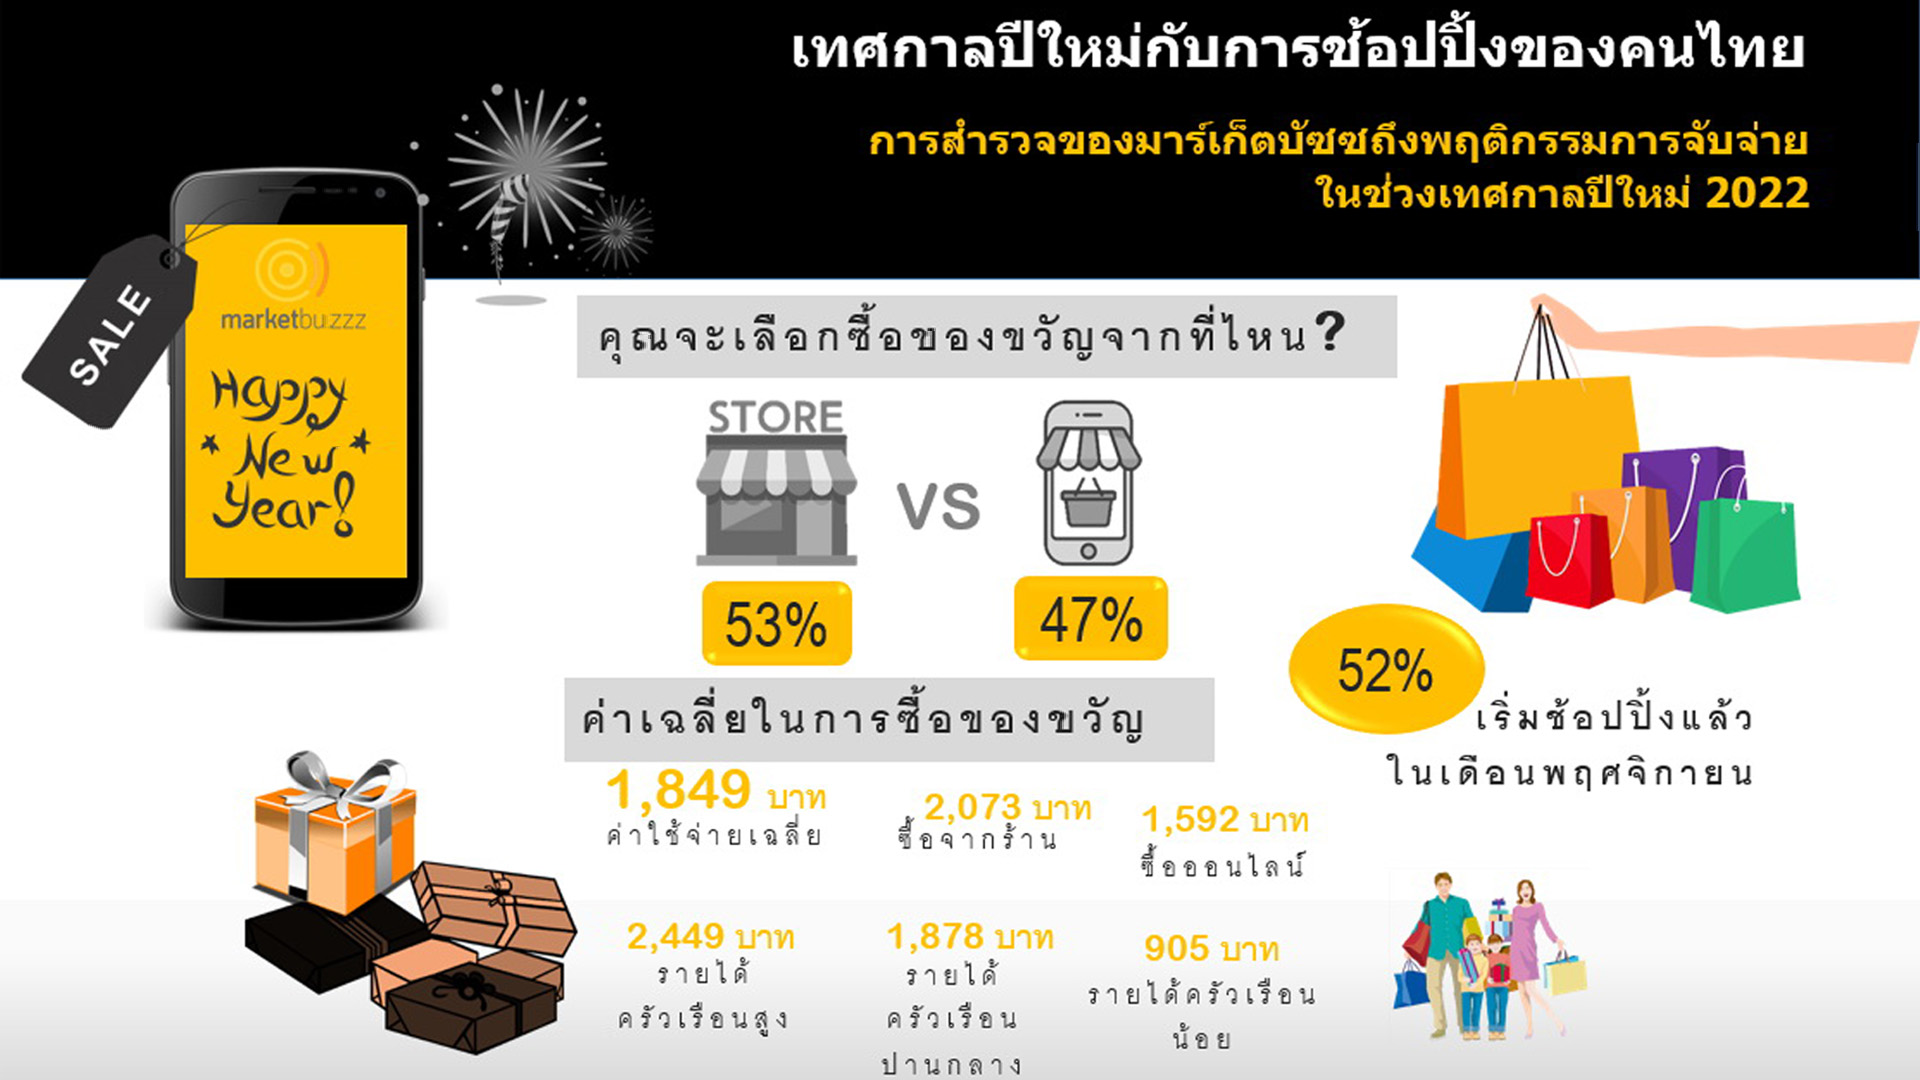 ผลสำรวจชี้โควิด-19 กระทบต่อการพฤติกรรมการซื้อของขวัญเทศกาลปีใหม่ คนไทย 45%  